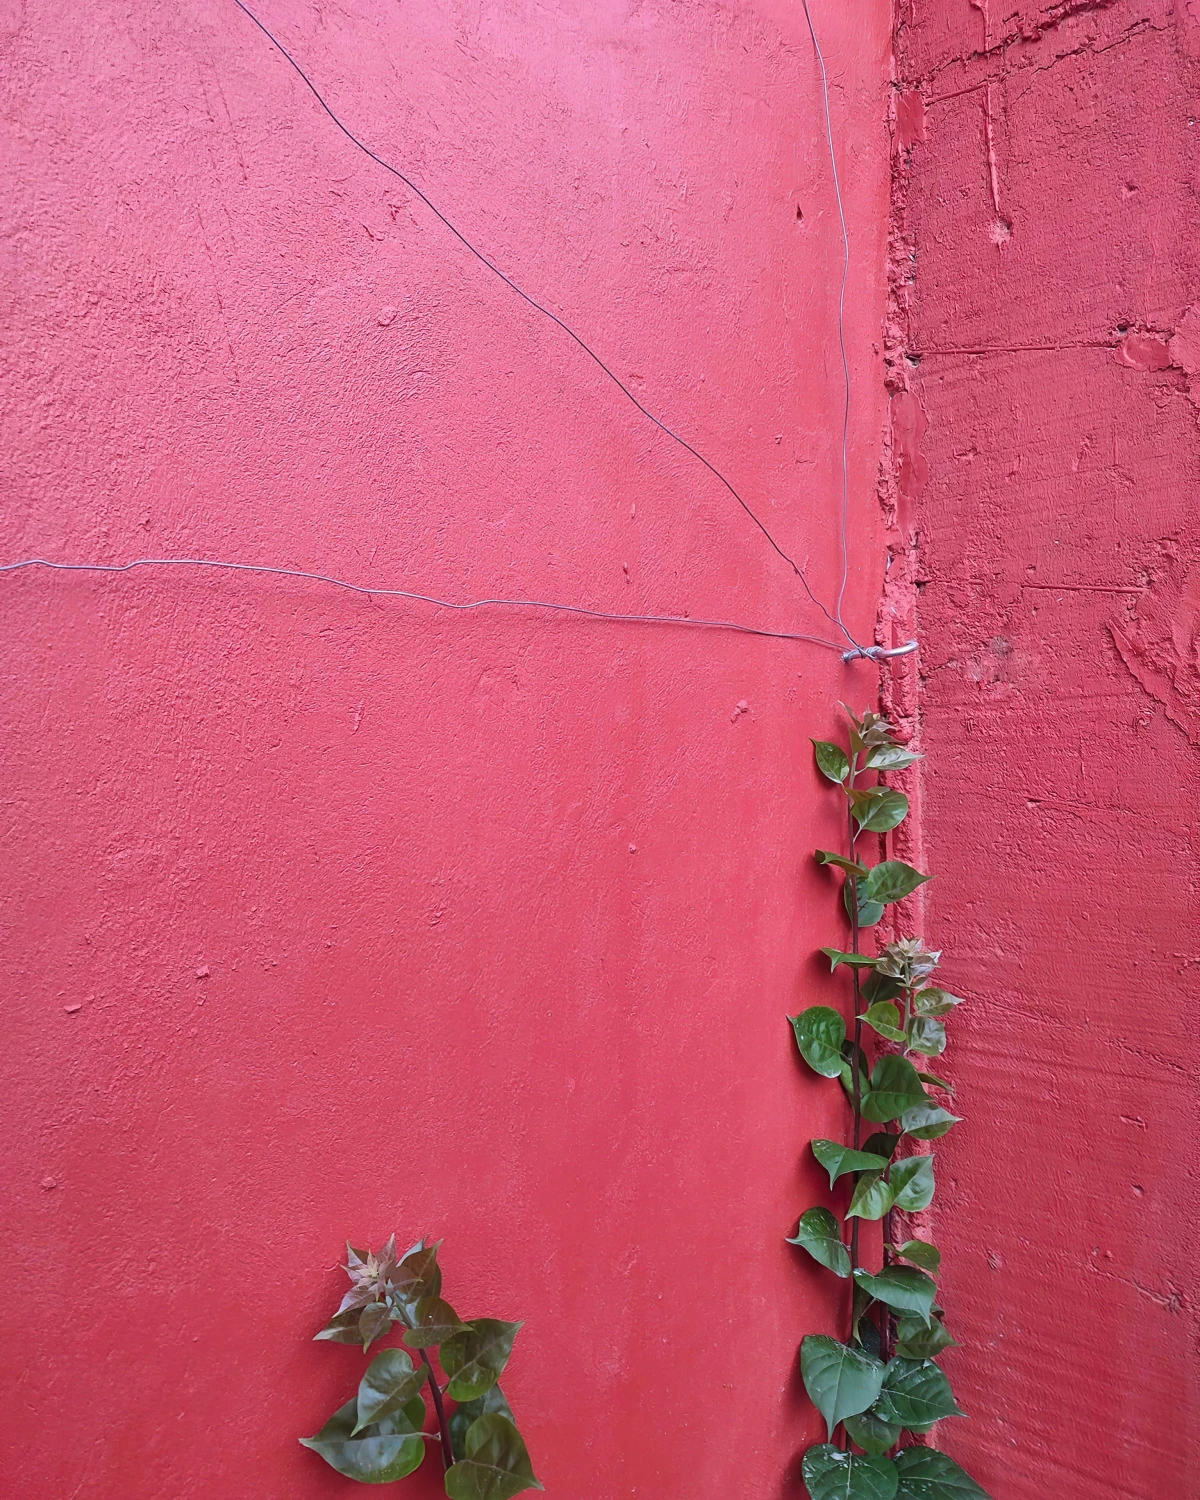 mur peinture rose fuchsia treillis diy avec cables fer fixation plante grimpante